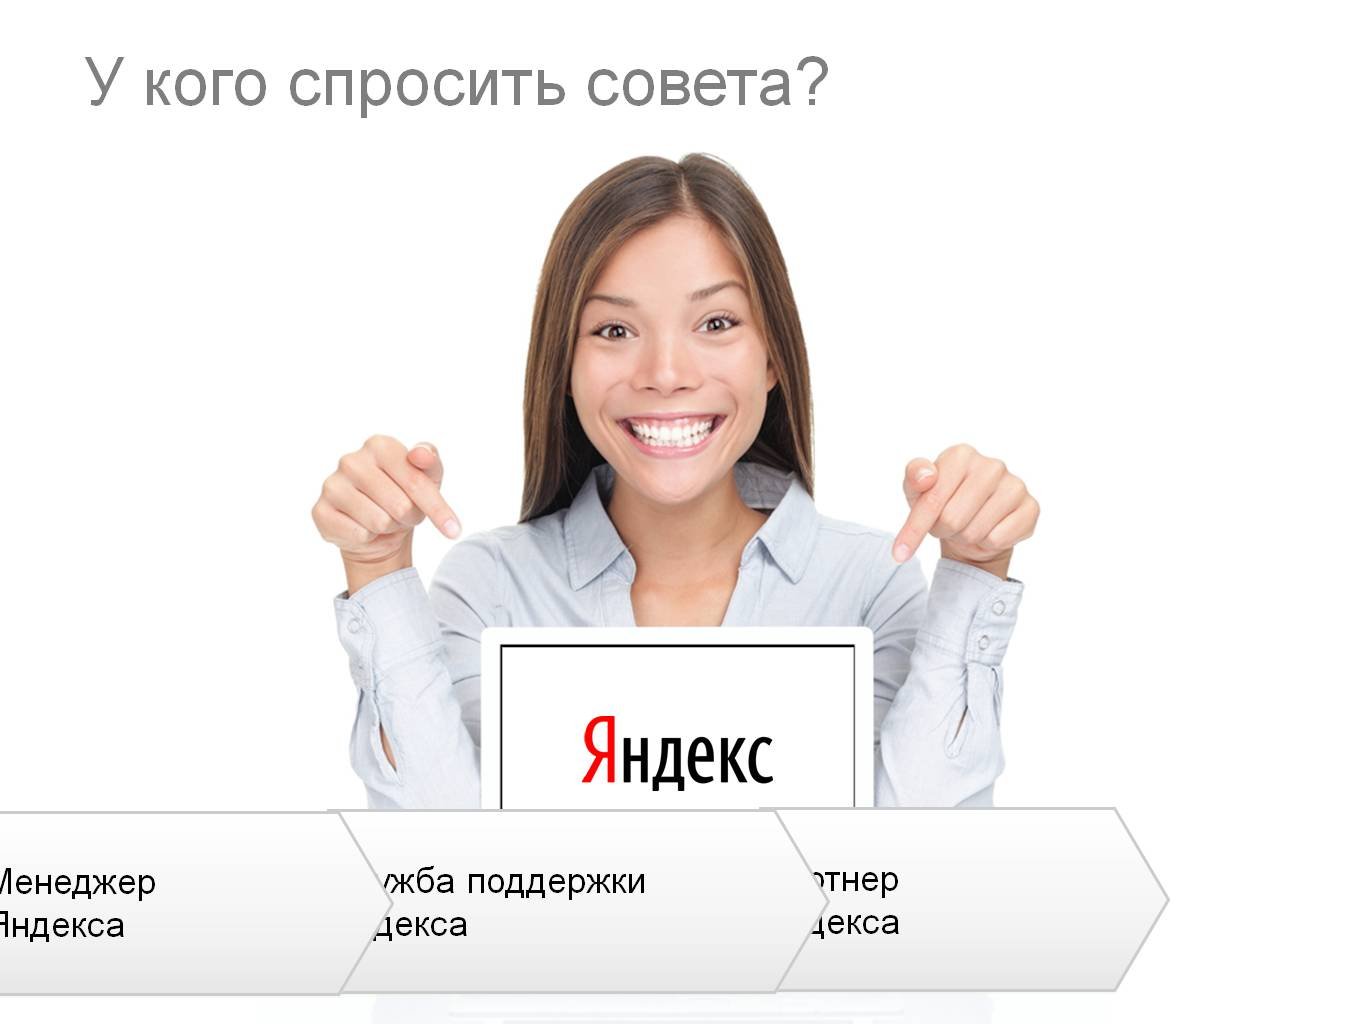 Яндекс поддержка